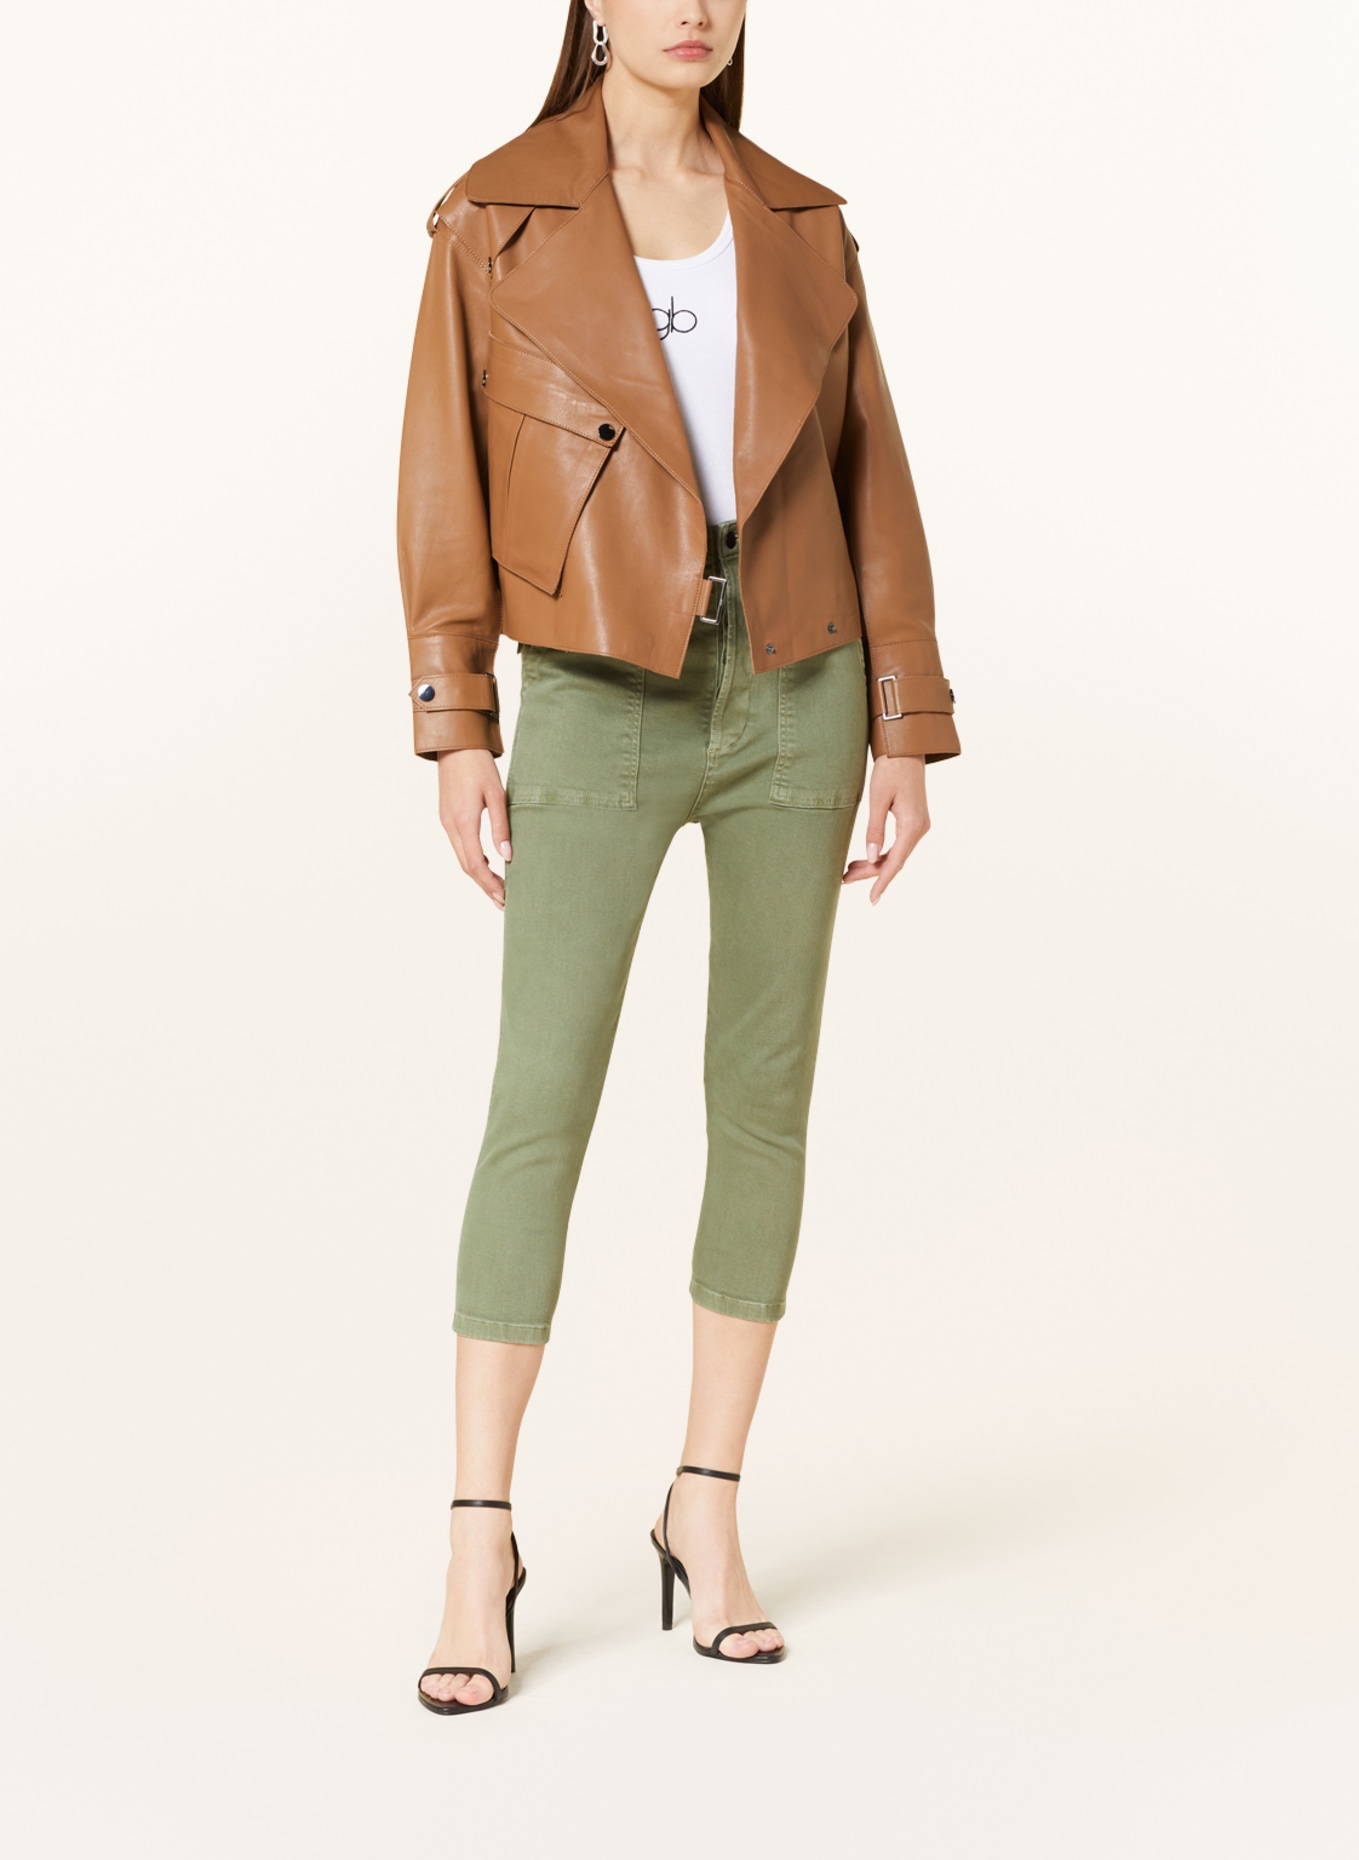 GITTA BANKO Leather jacket ALEXA, Color: COGNAC (Image 2)